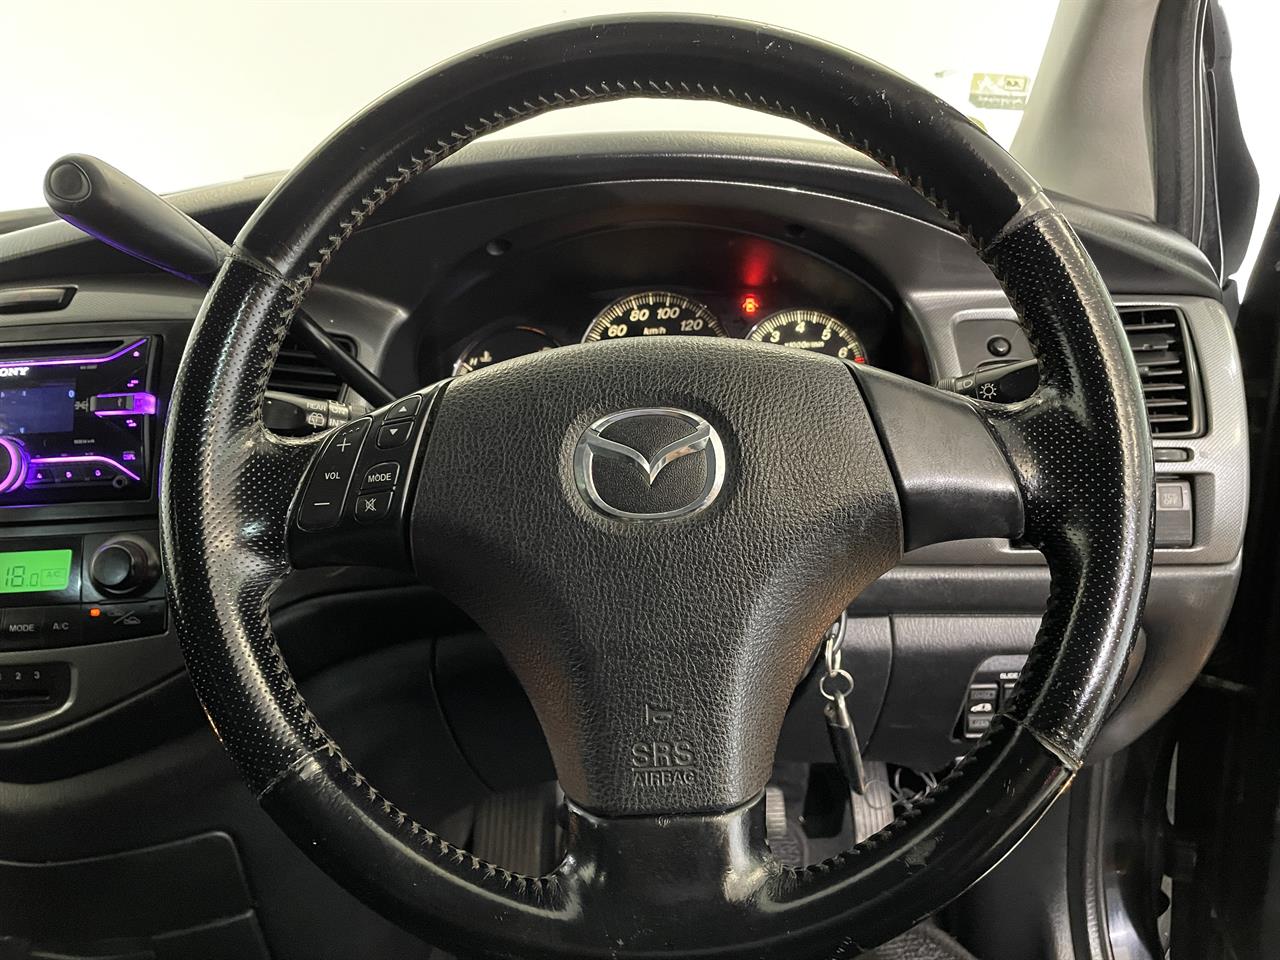 2005 Mazda MPV